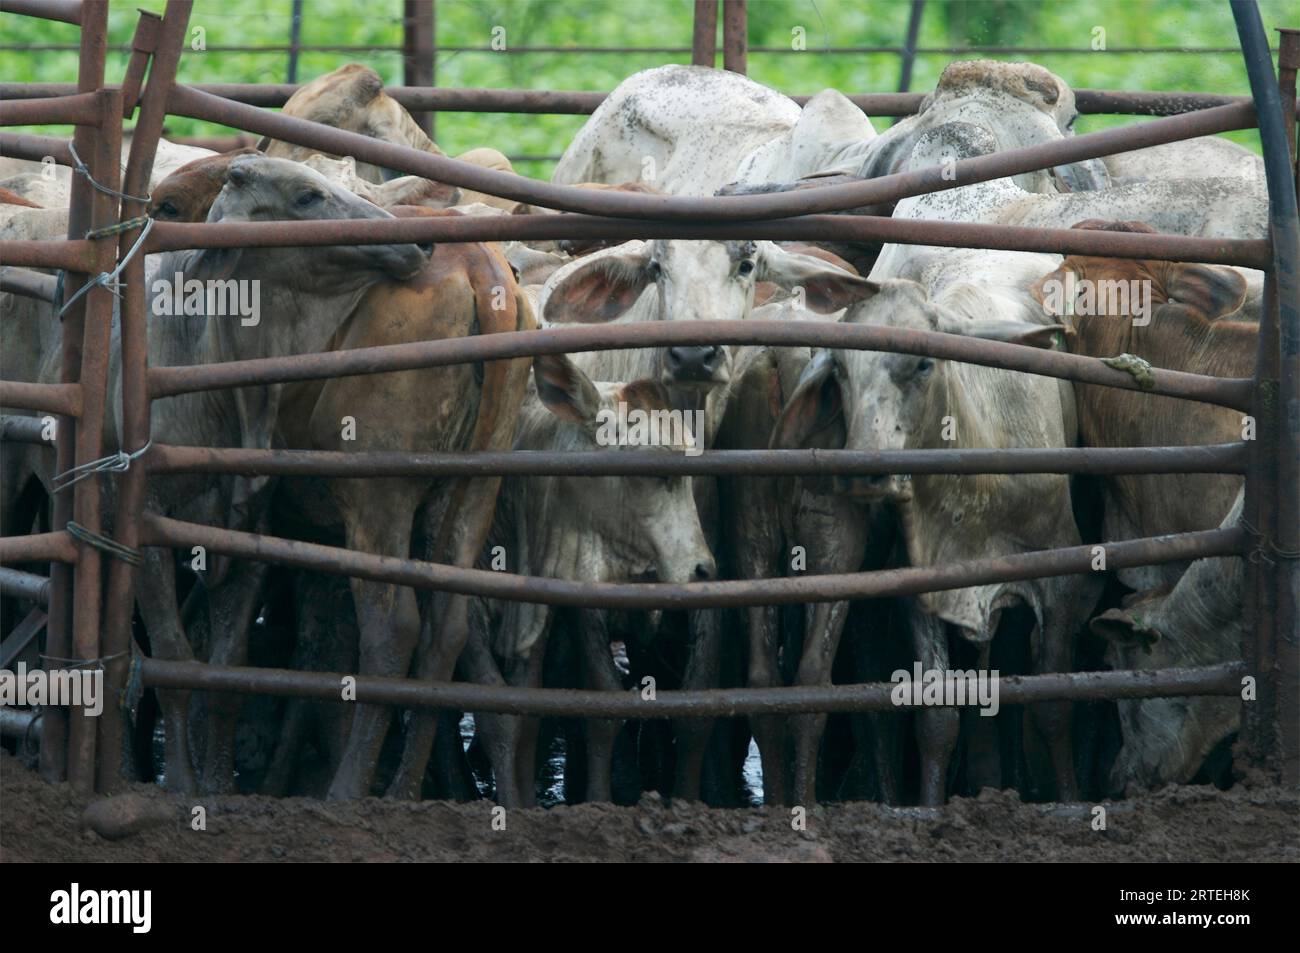 Herd of cattle in a pen; Darwin, Australia Stock Photo